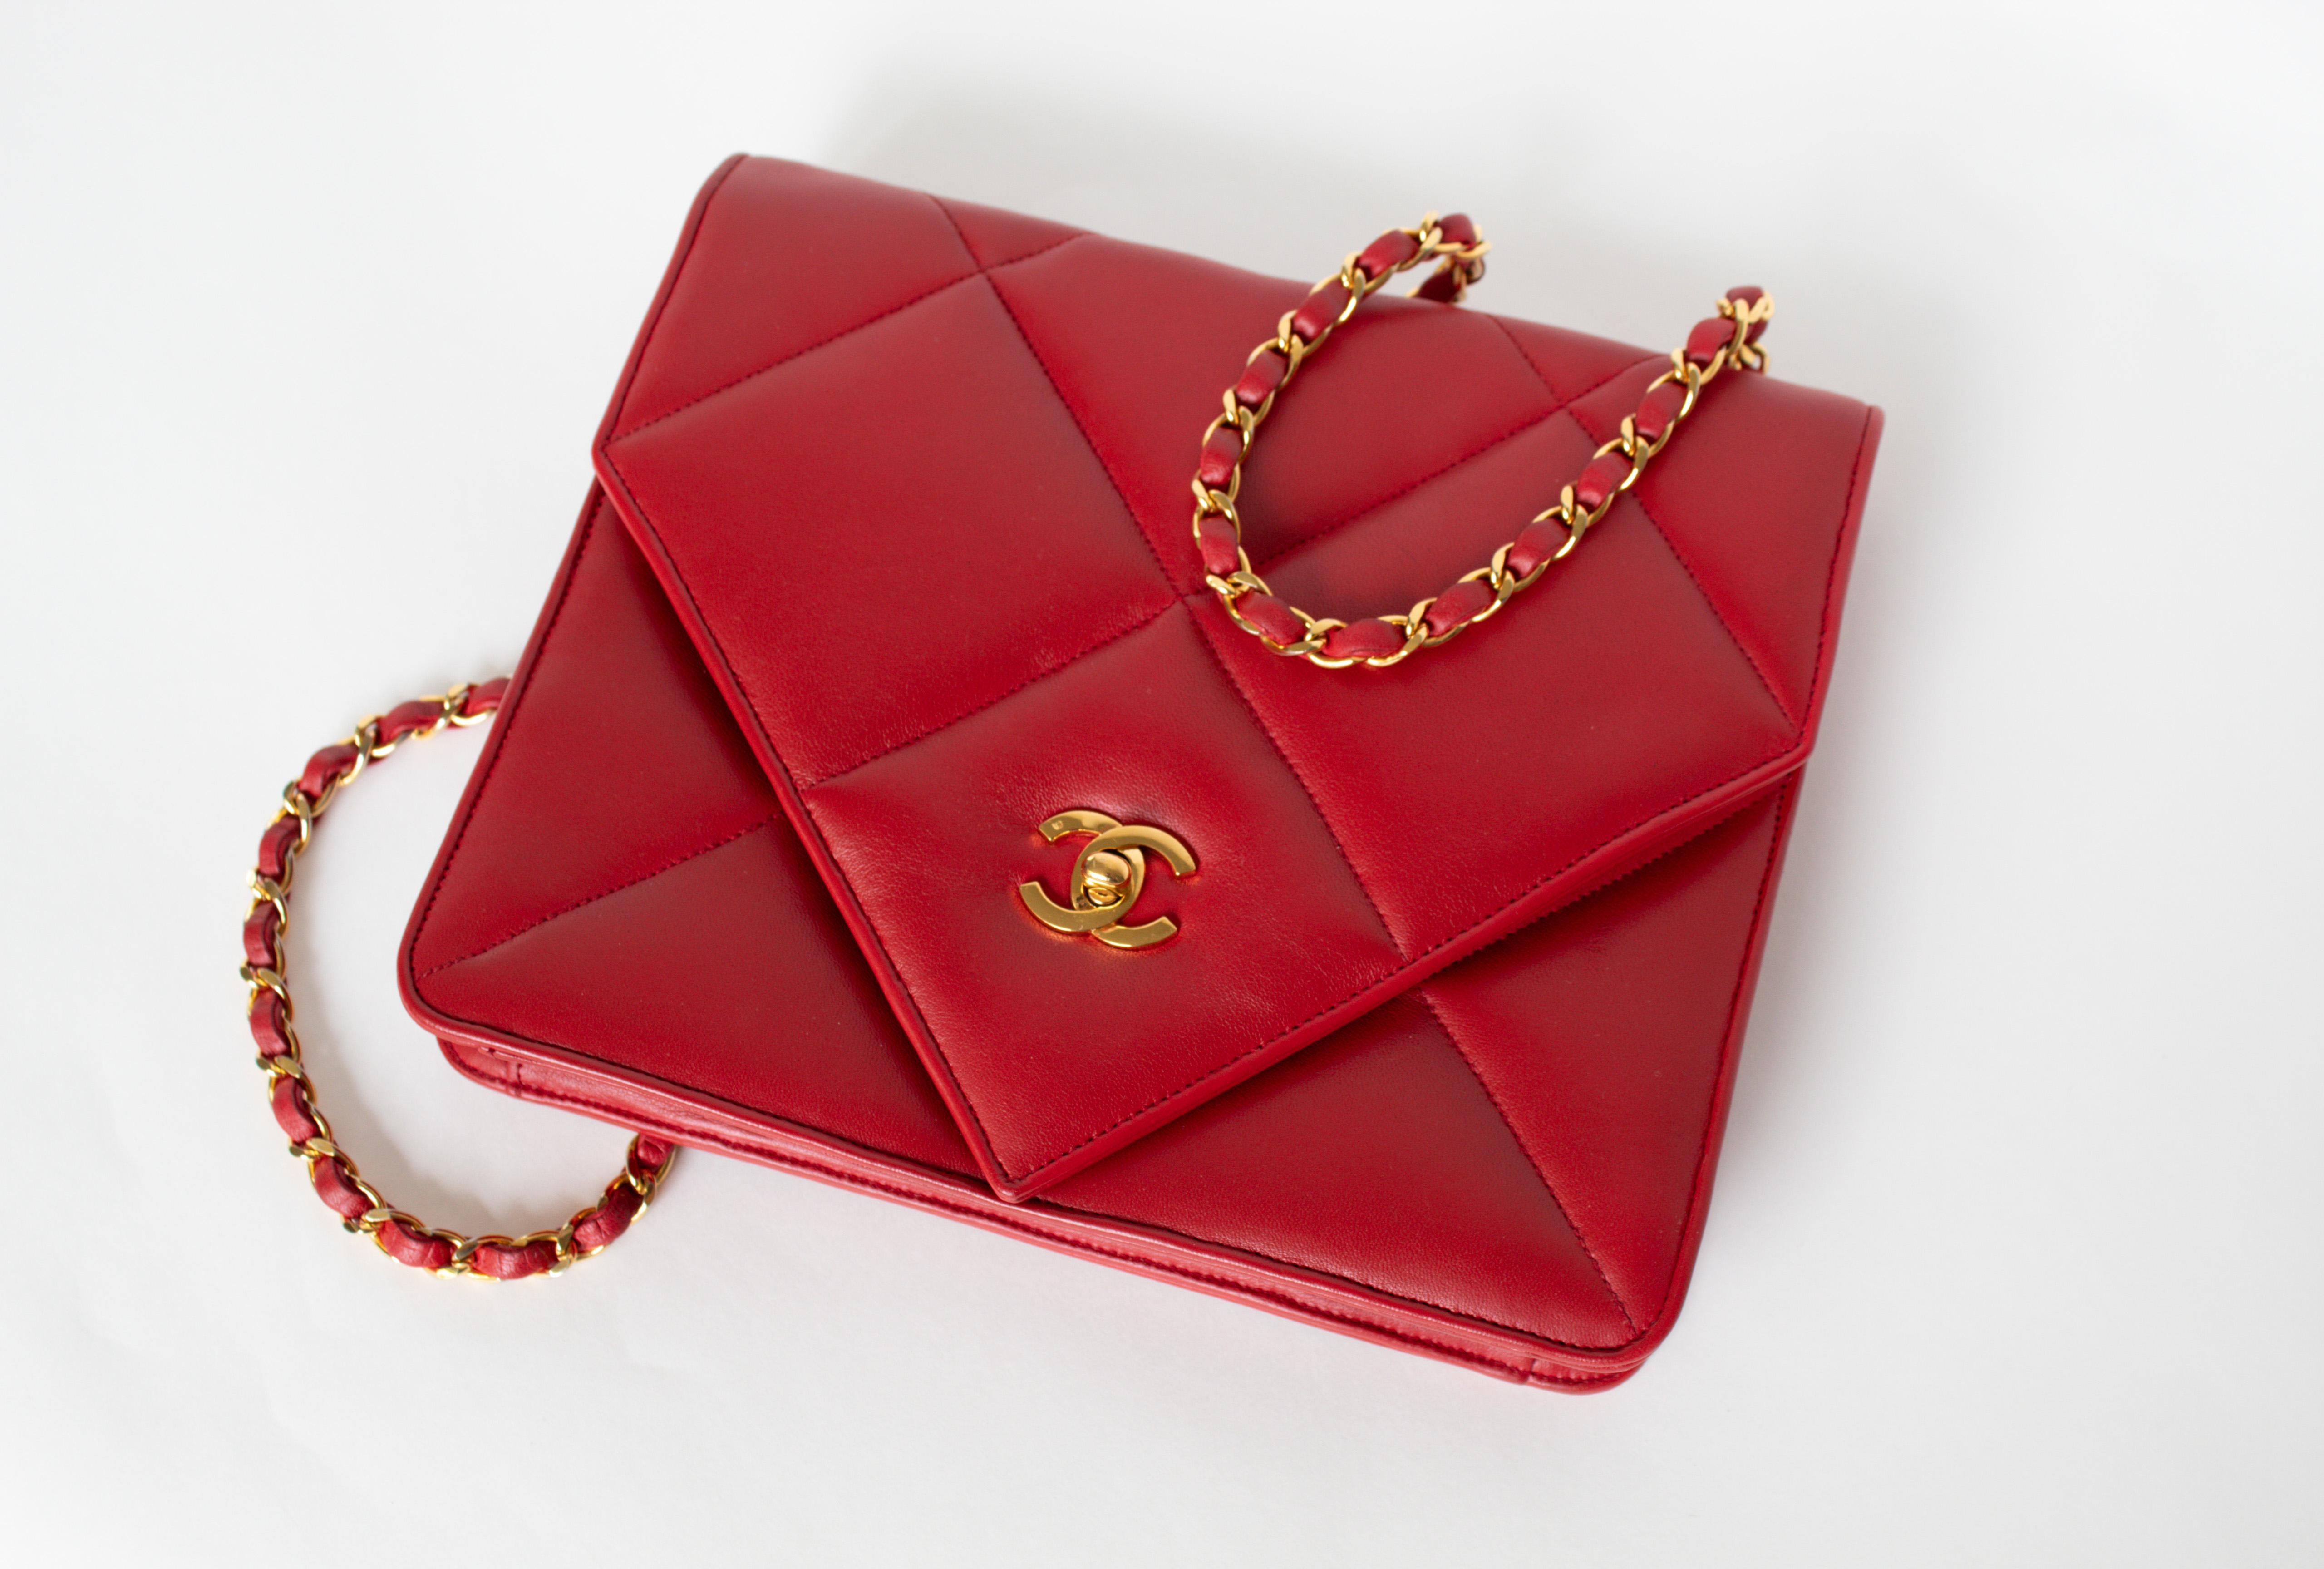 Classic Chanel 19 Vintage Rare 90s Jumbo Lambskin Red Envelope Flap Bag 


Sac classique à rabat Jumbo de Chanel en cuir d'agneau rouge des années 90 avec fermeture à rabat en V de l'enveloppe. 

Sac Chanel en cuir d'agneau rouge avec quincaillerie